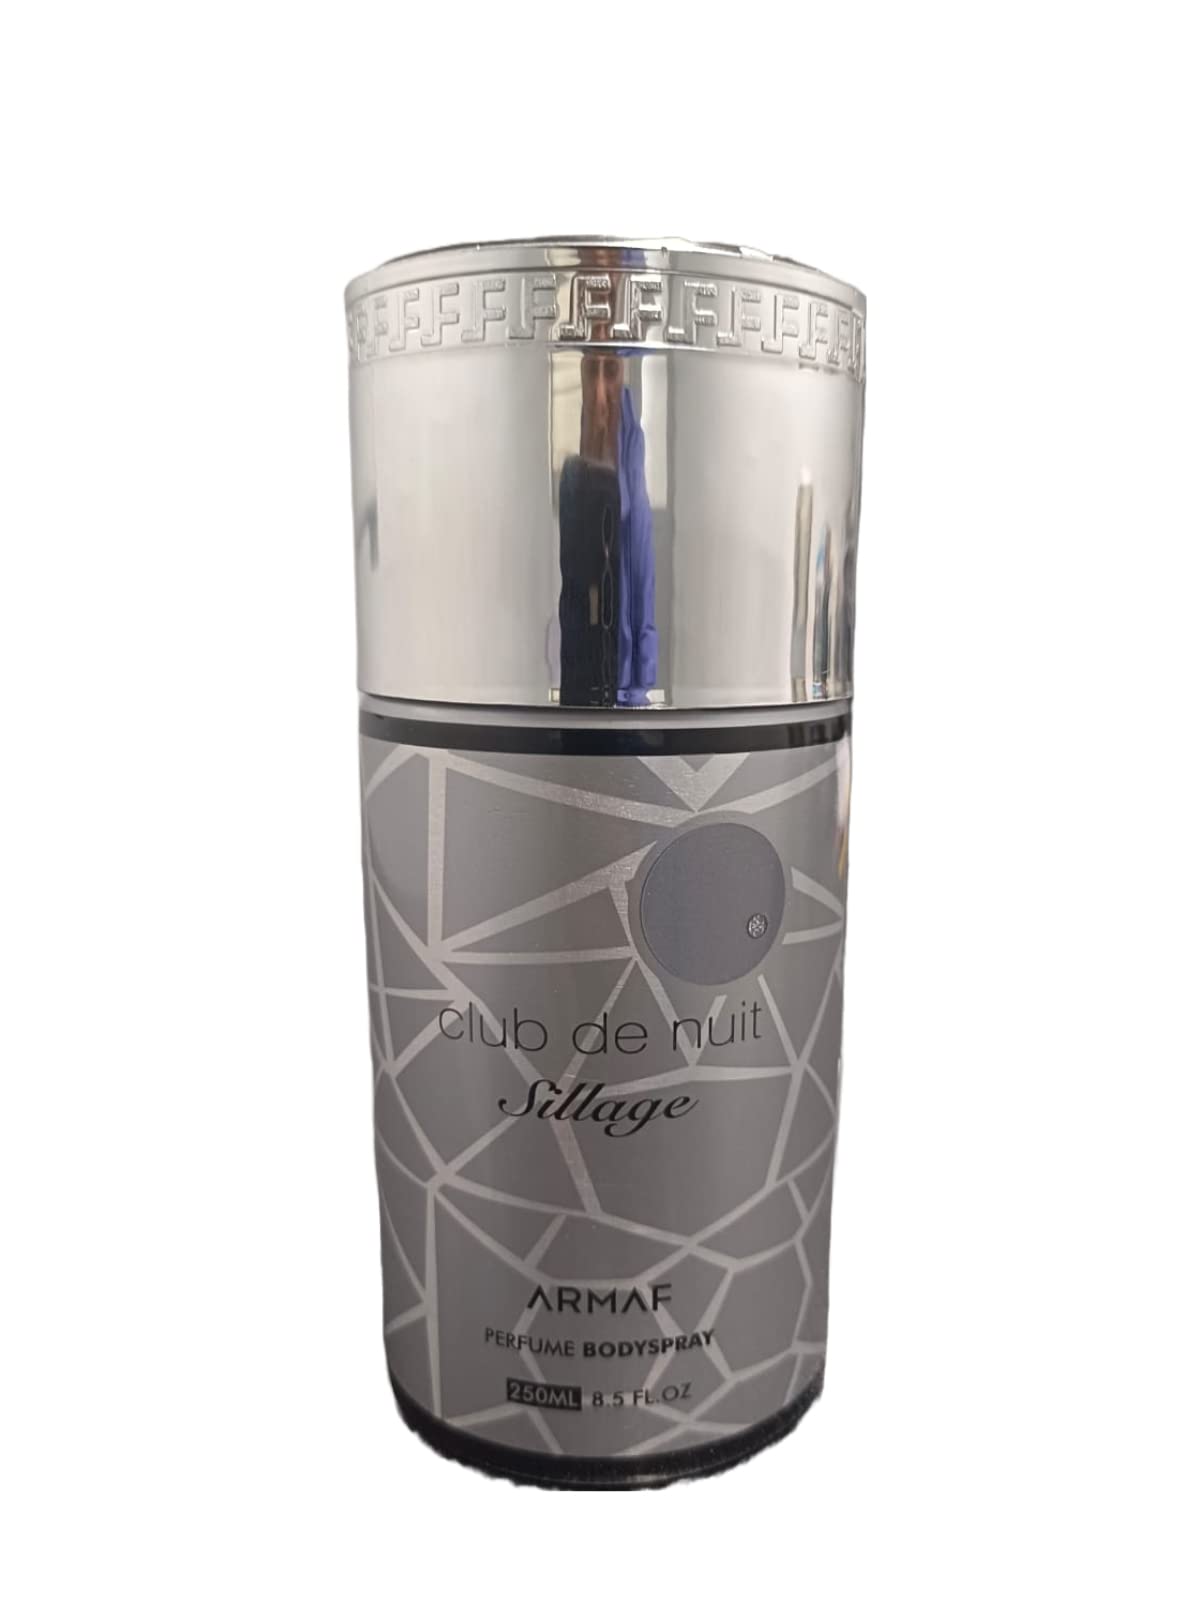 Club De Nuit Sillage by Armaf for Unisex - Perfume Body Spray - 250ml